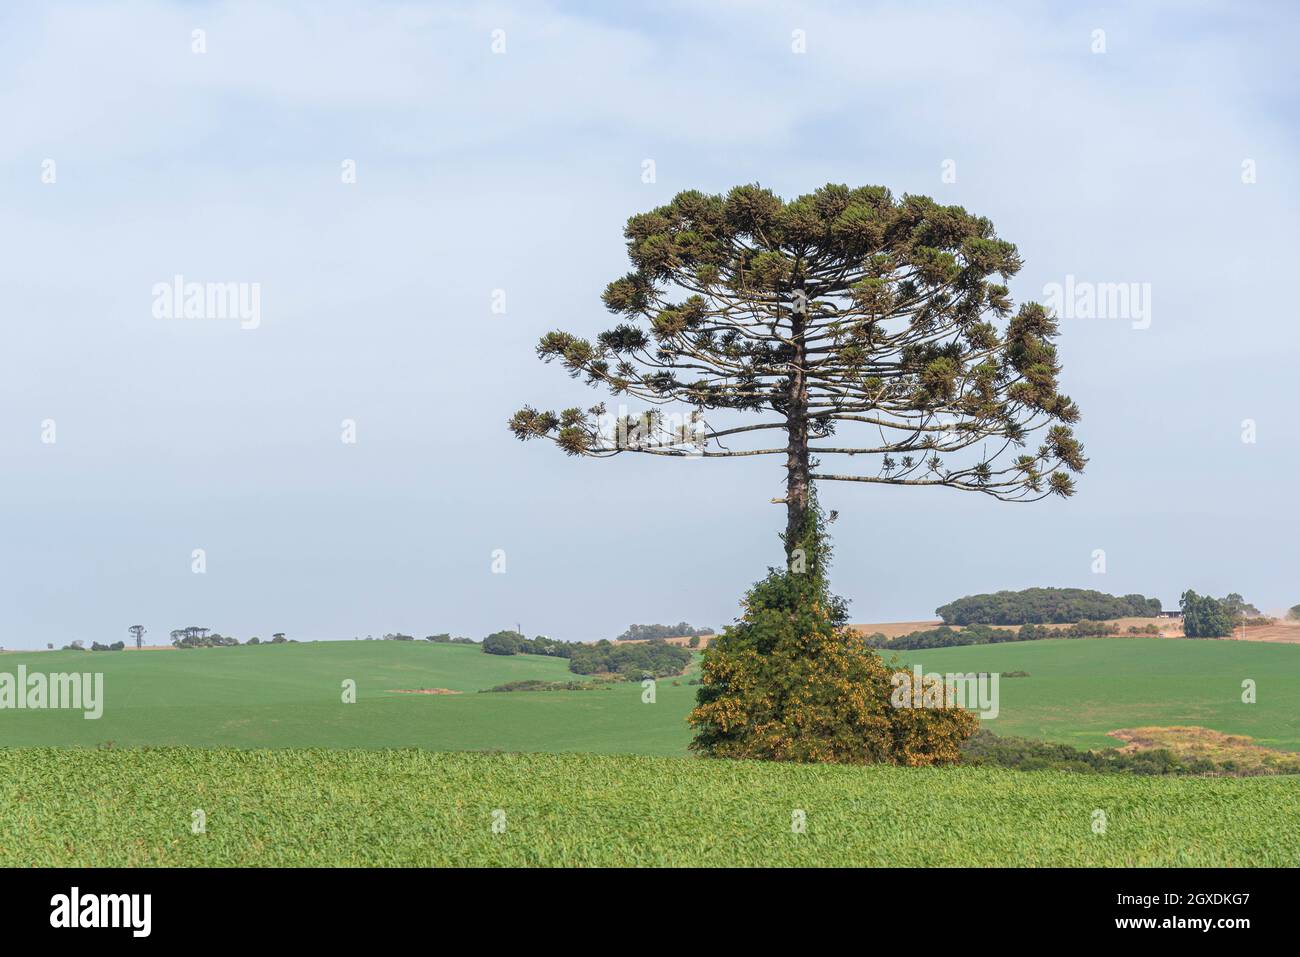 Araucaria angustifolia arbre isolé dans le champ de pâturage. Plante connue sous le nom de Prirão brésilien. Espèces arboricoles de gymnospermes appartenant à l'Araucariac Banque D'Images